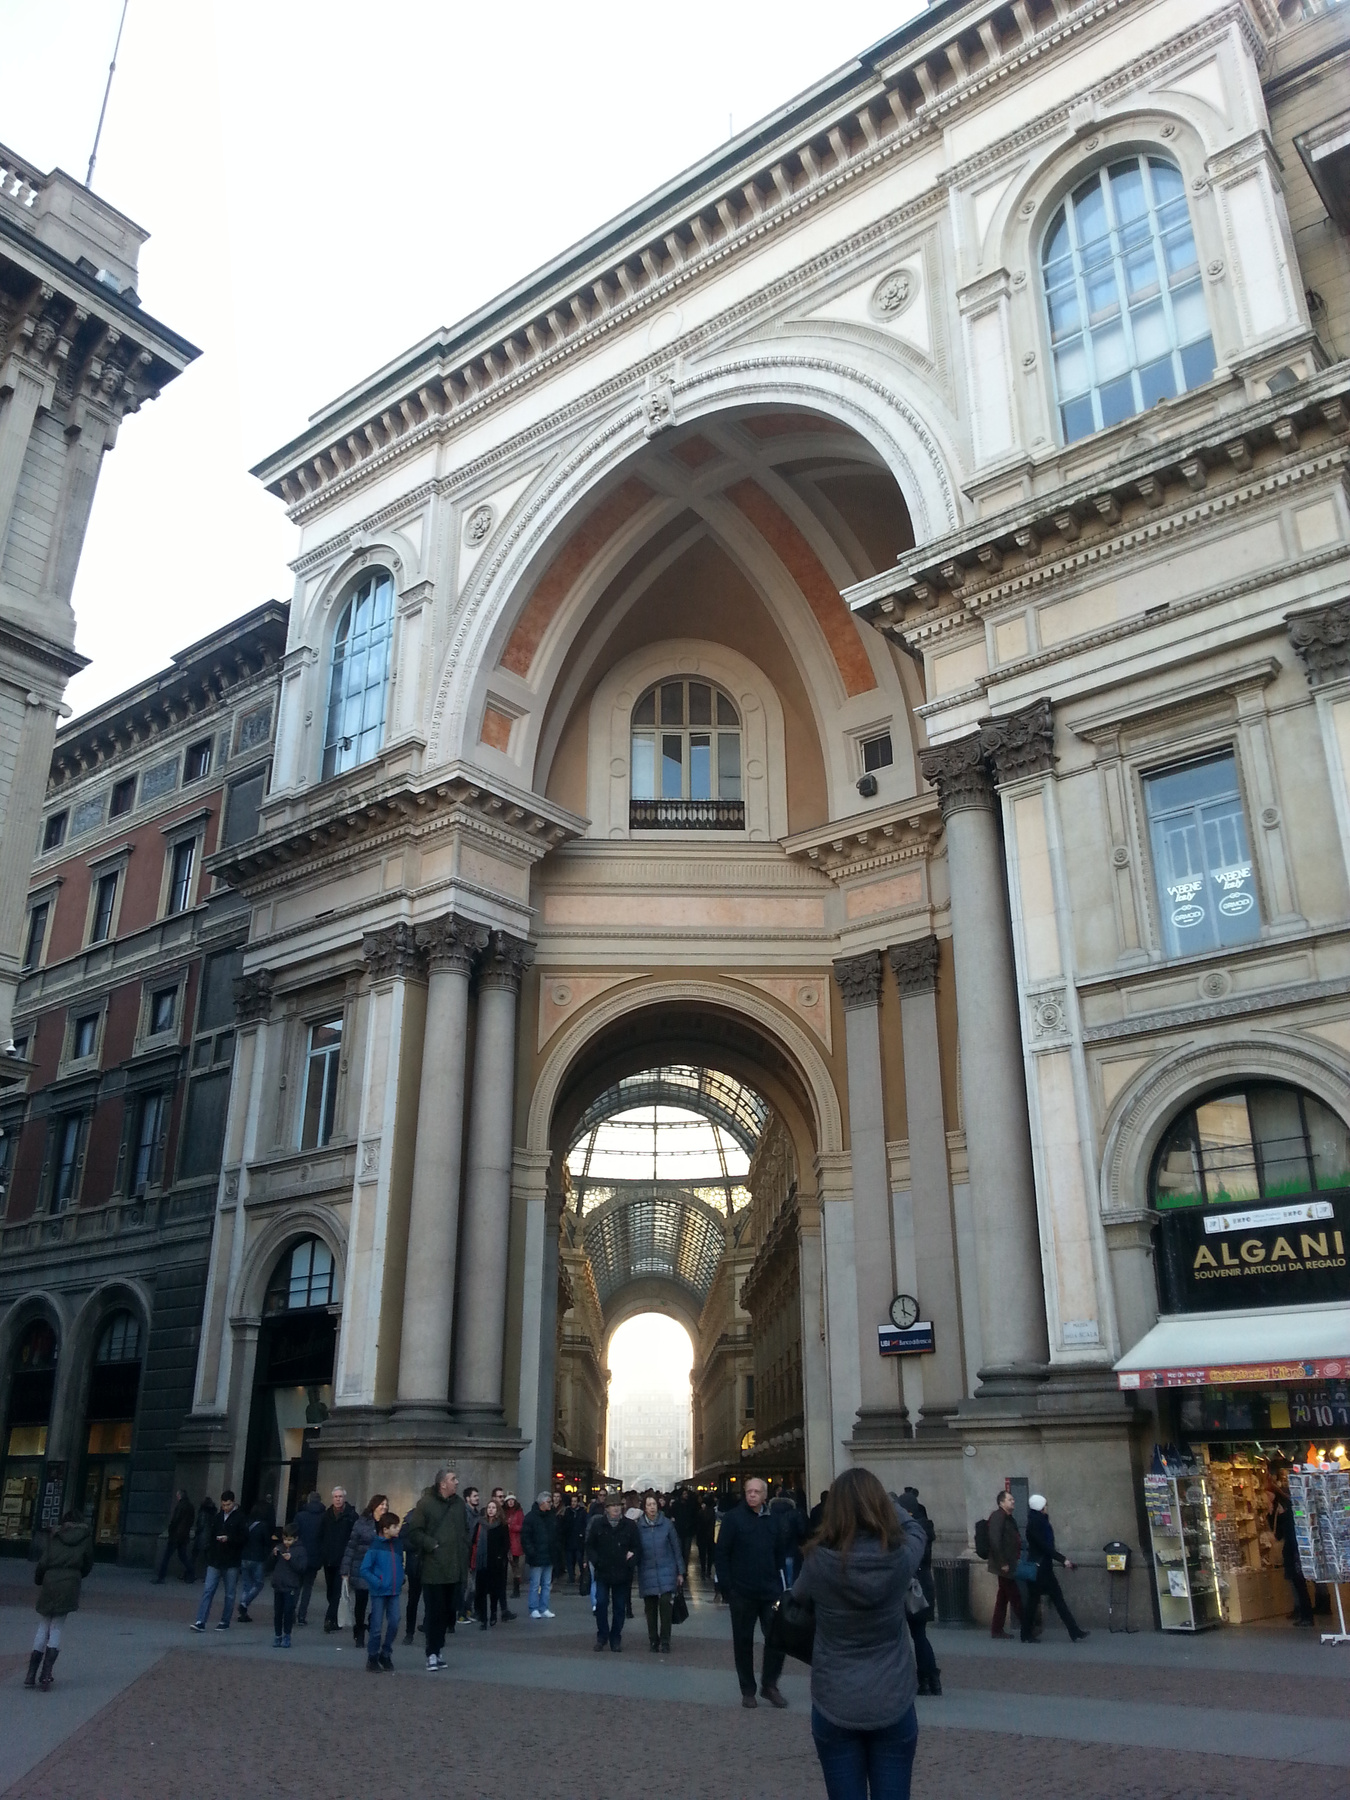 Ne kerülje el Milánóban az üzleteket sem! Ez itt például egy elég elegáns Zara bejárat.